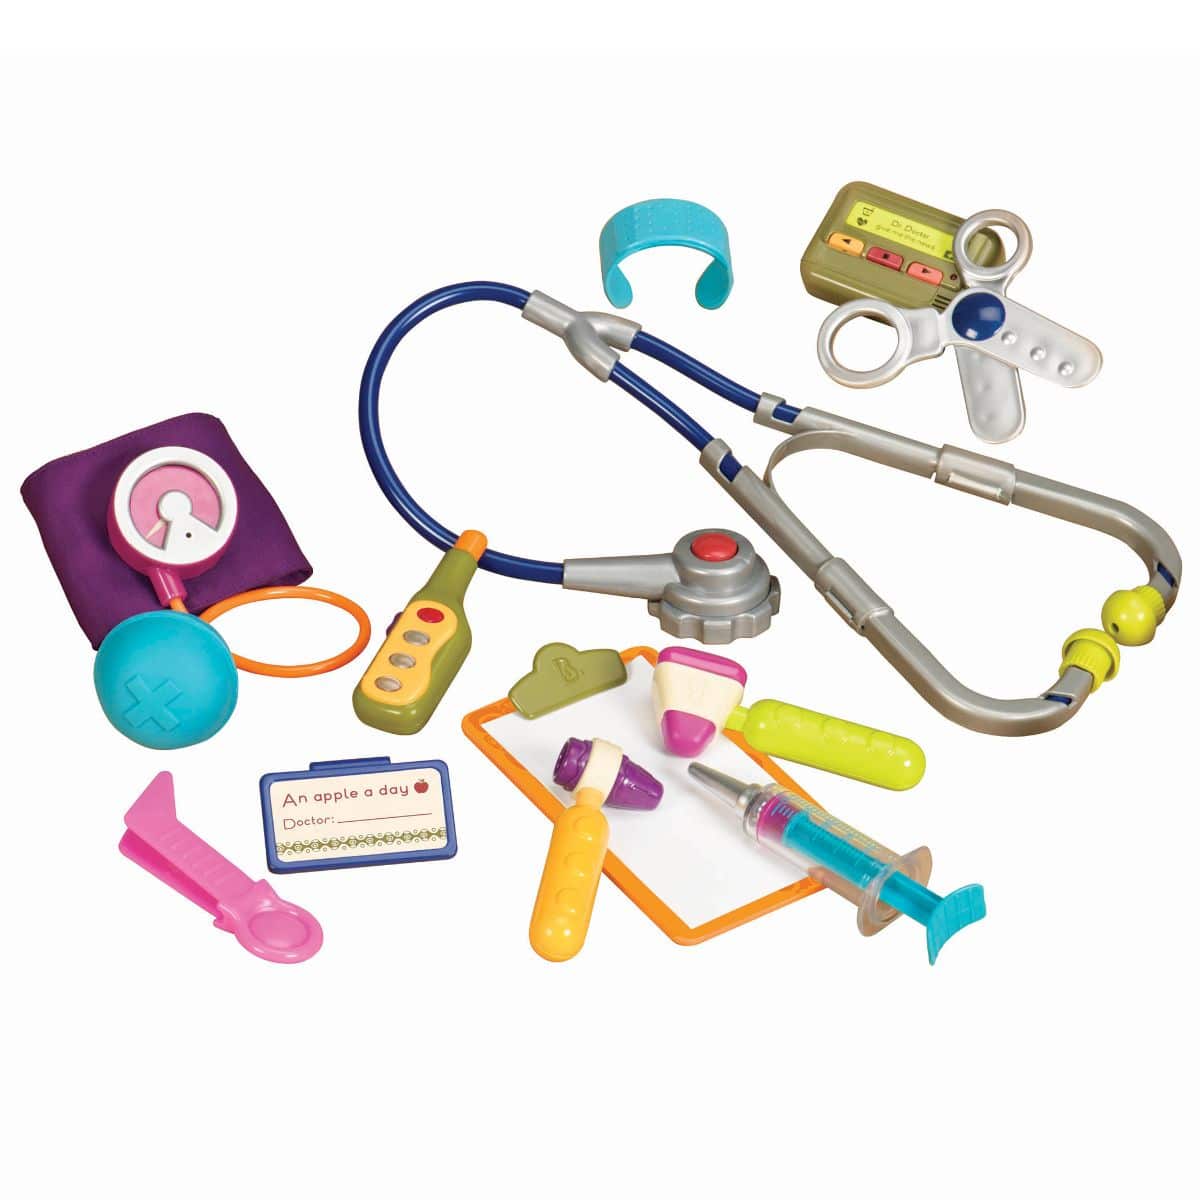 Toy medical kit